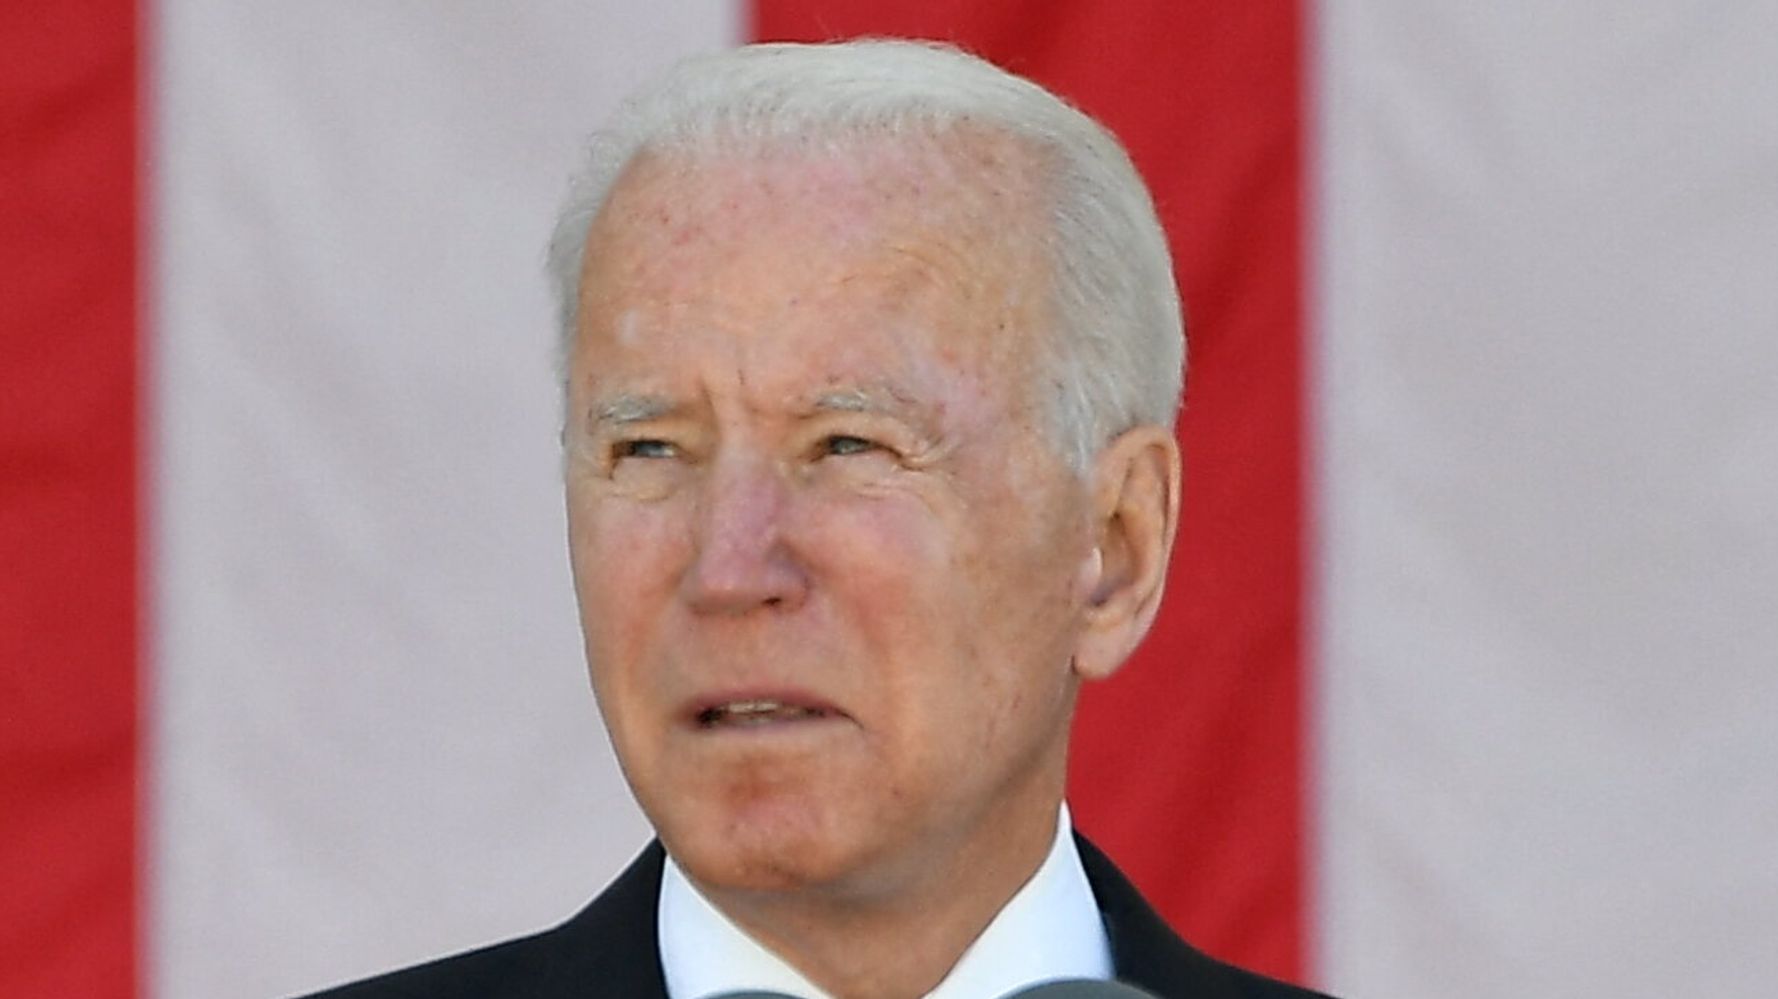 Joe Biden To Honor Forgotten Victims Of Tulsa Race Massacre